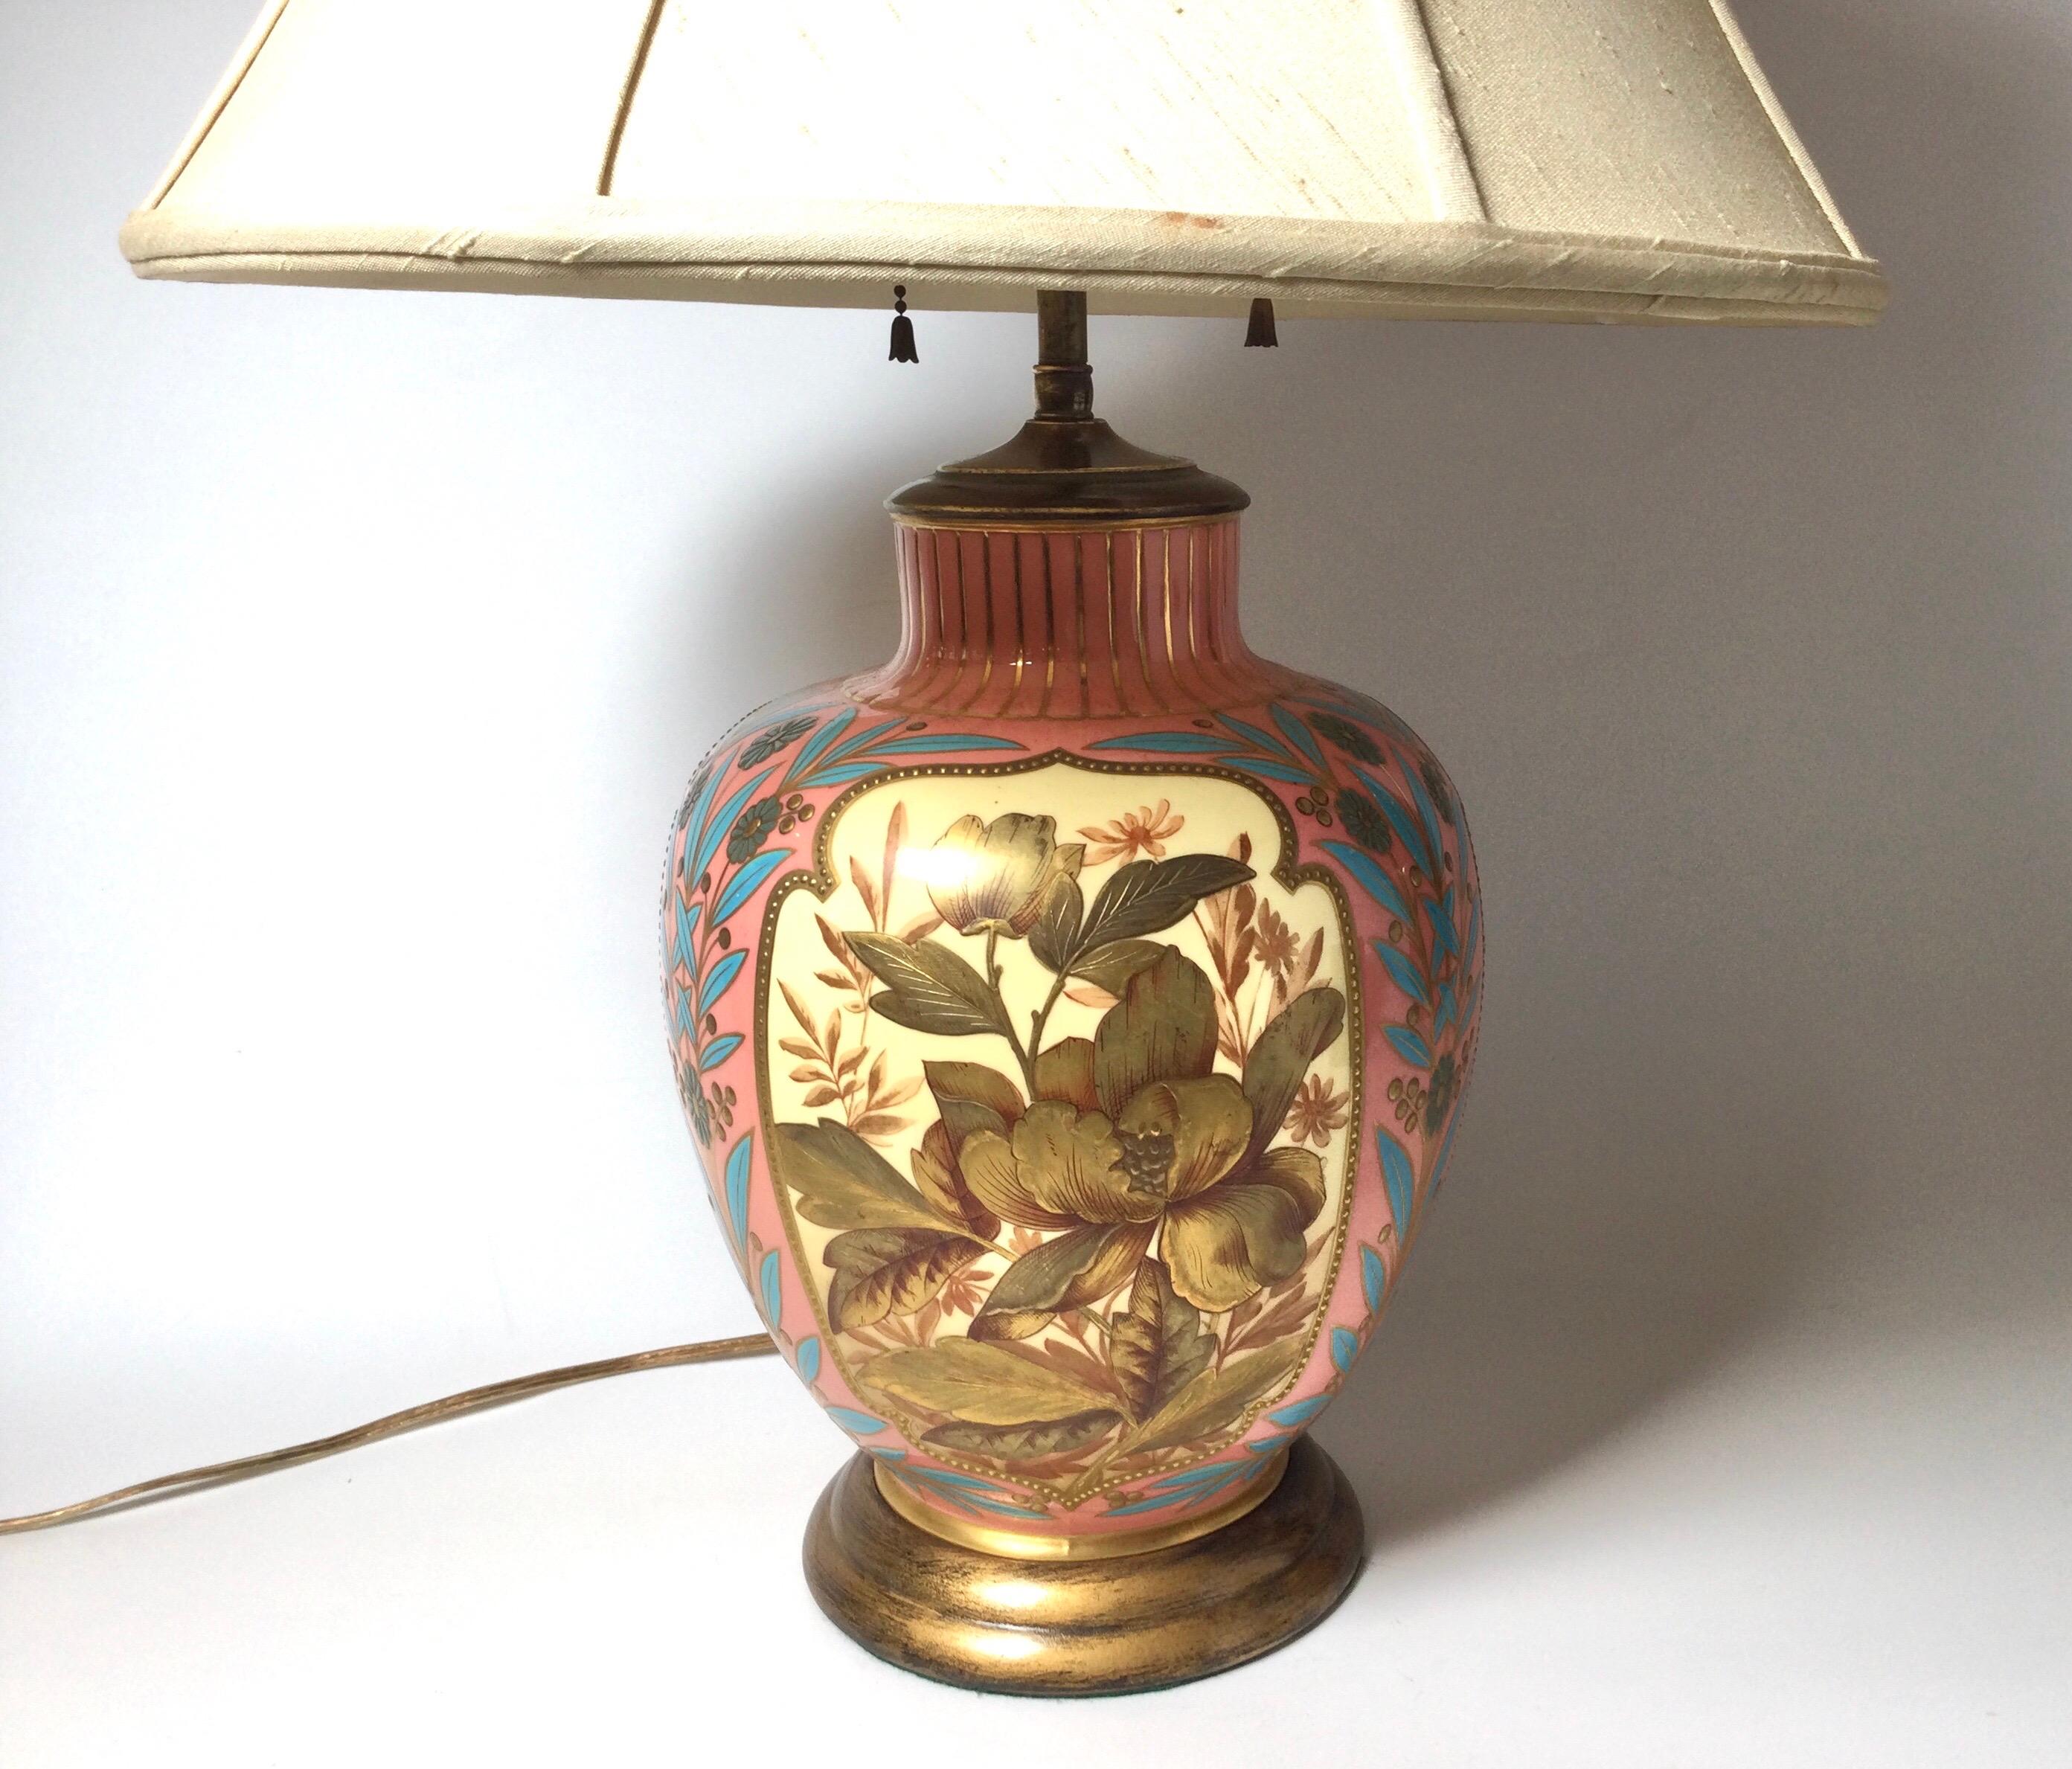 Magnifique vase en porcelaine dorée et émaillée à la main par Royal Worcester, vers 1870-80. La surface en relief, dorée et décorée, présente un fond corail avec des tons bronze doré et or avec des éclats de couleurs vibrantes. La monture en laiton